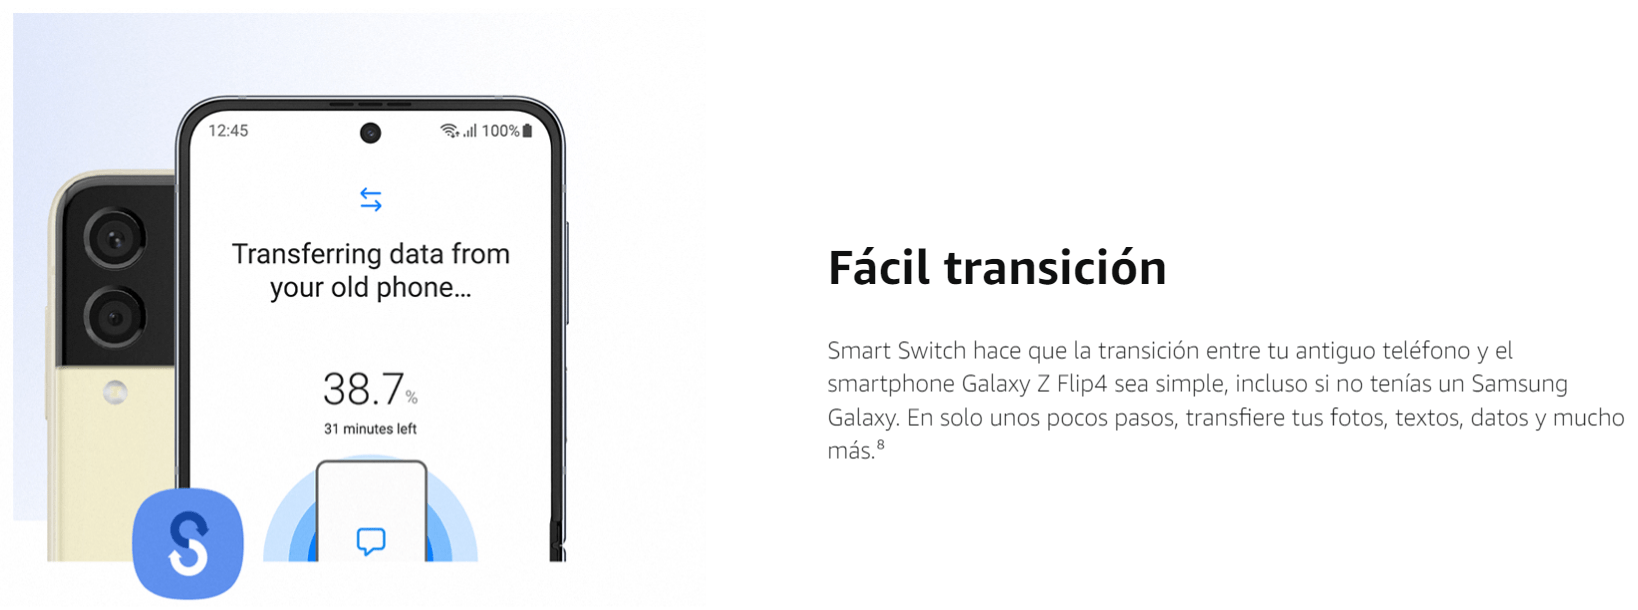 Samsung Galaxy Z Flip4 caracteristicas